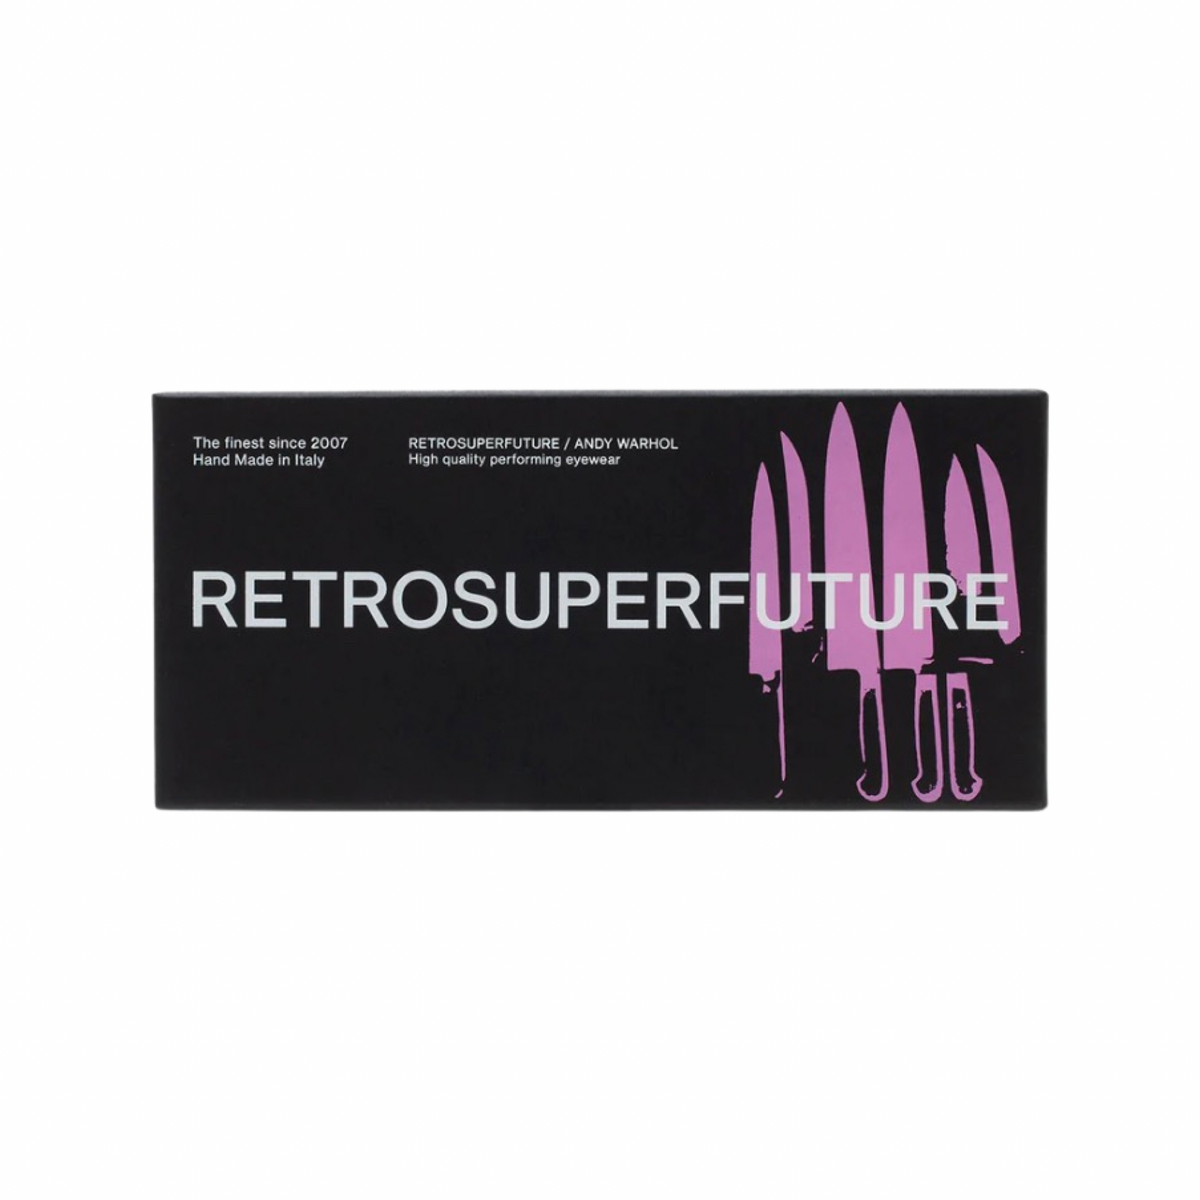 RETRO SUPER FUTURE X ANDY WARHOL